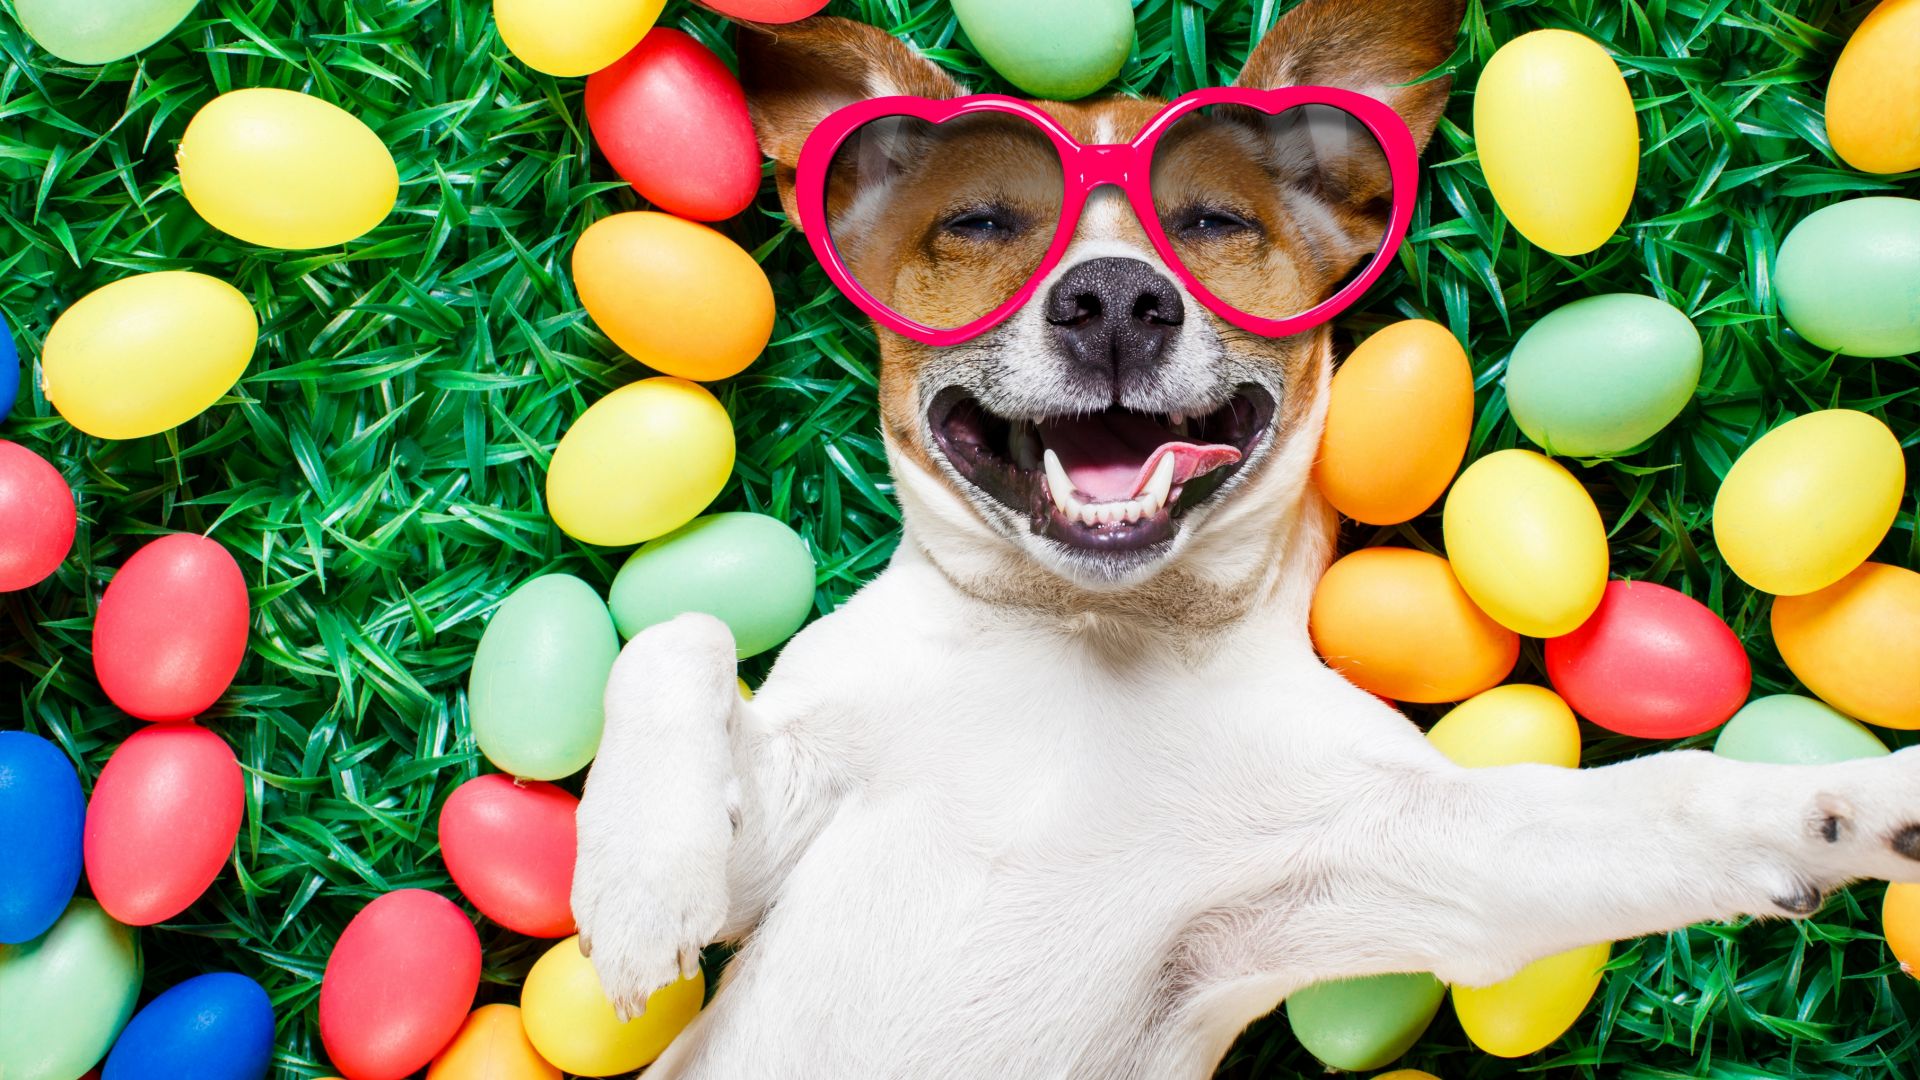 Wallpaper Dog, lying down, Easter eggs, sunglasses, humor